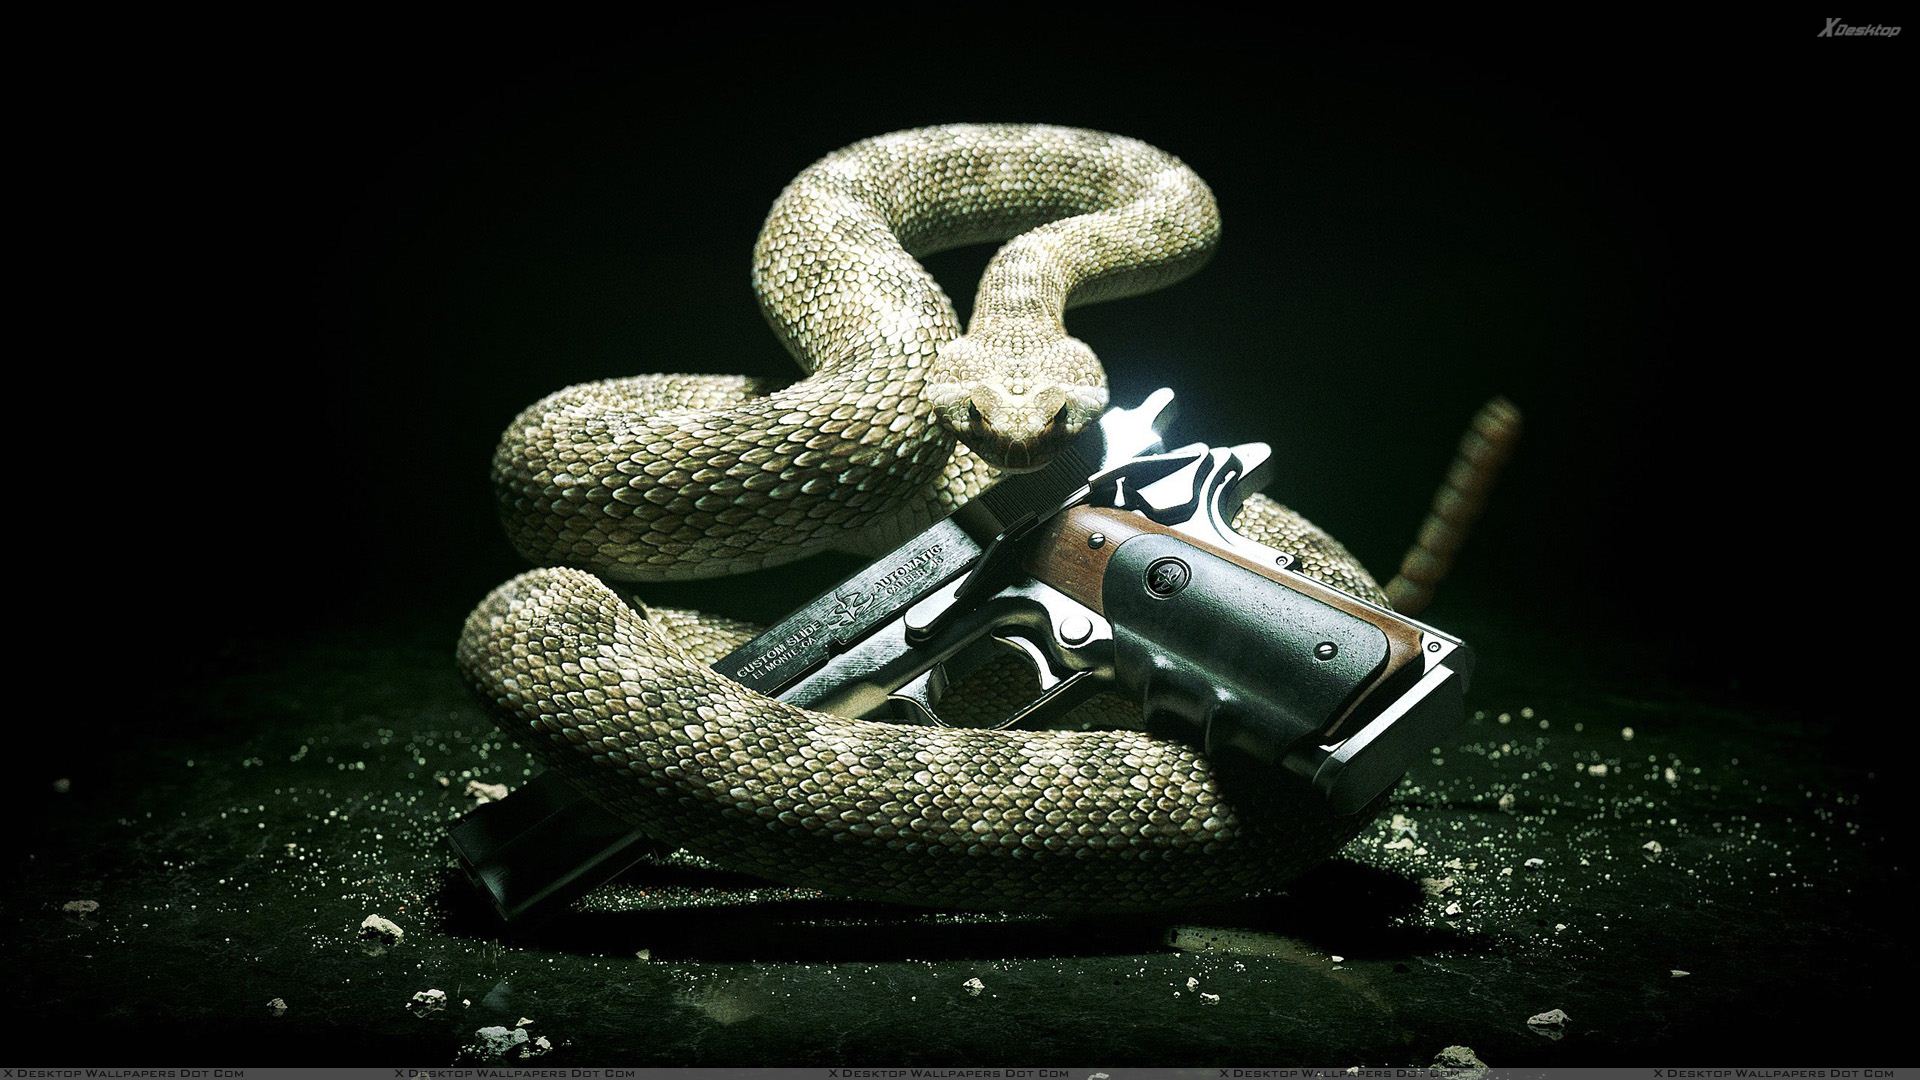 Hitman Absolution Snake With A Gun Wallpaper